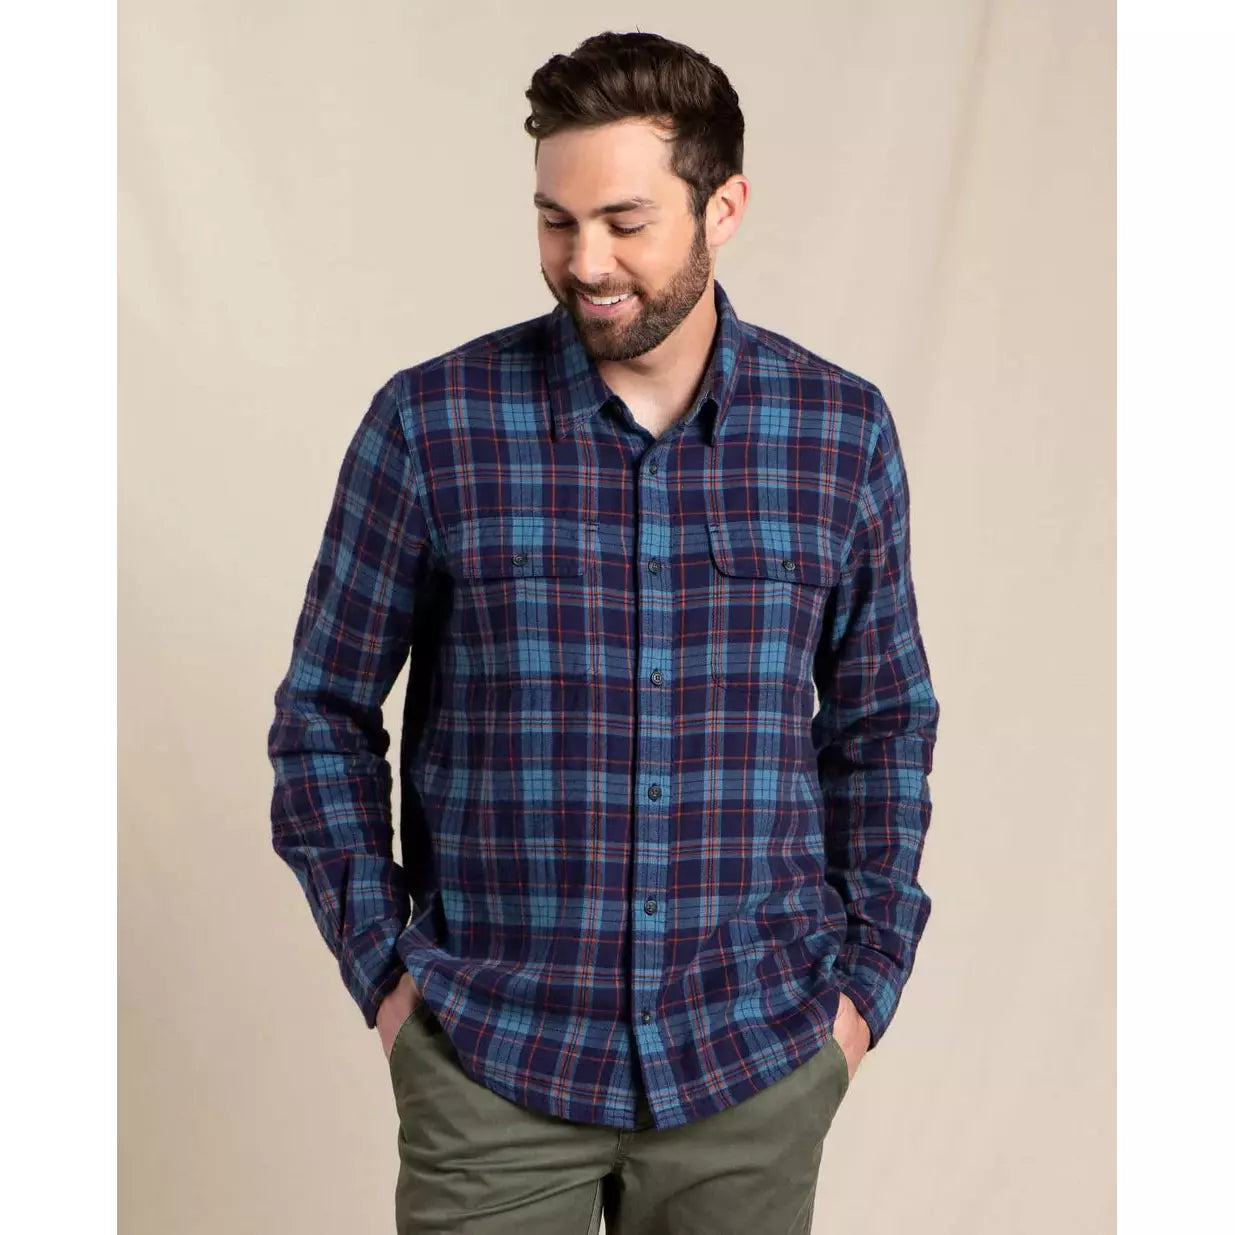 Indigo Flannel Shirt – The Mountain Air